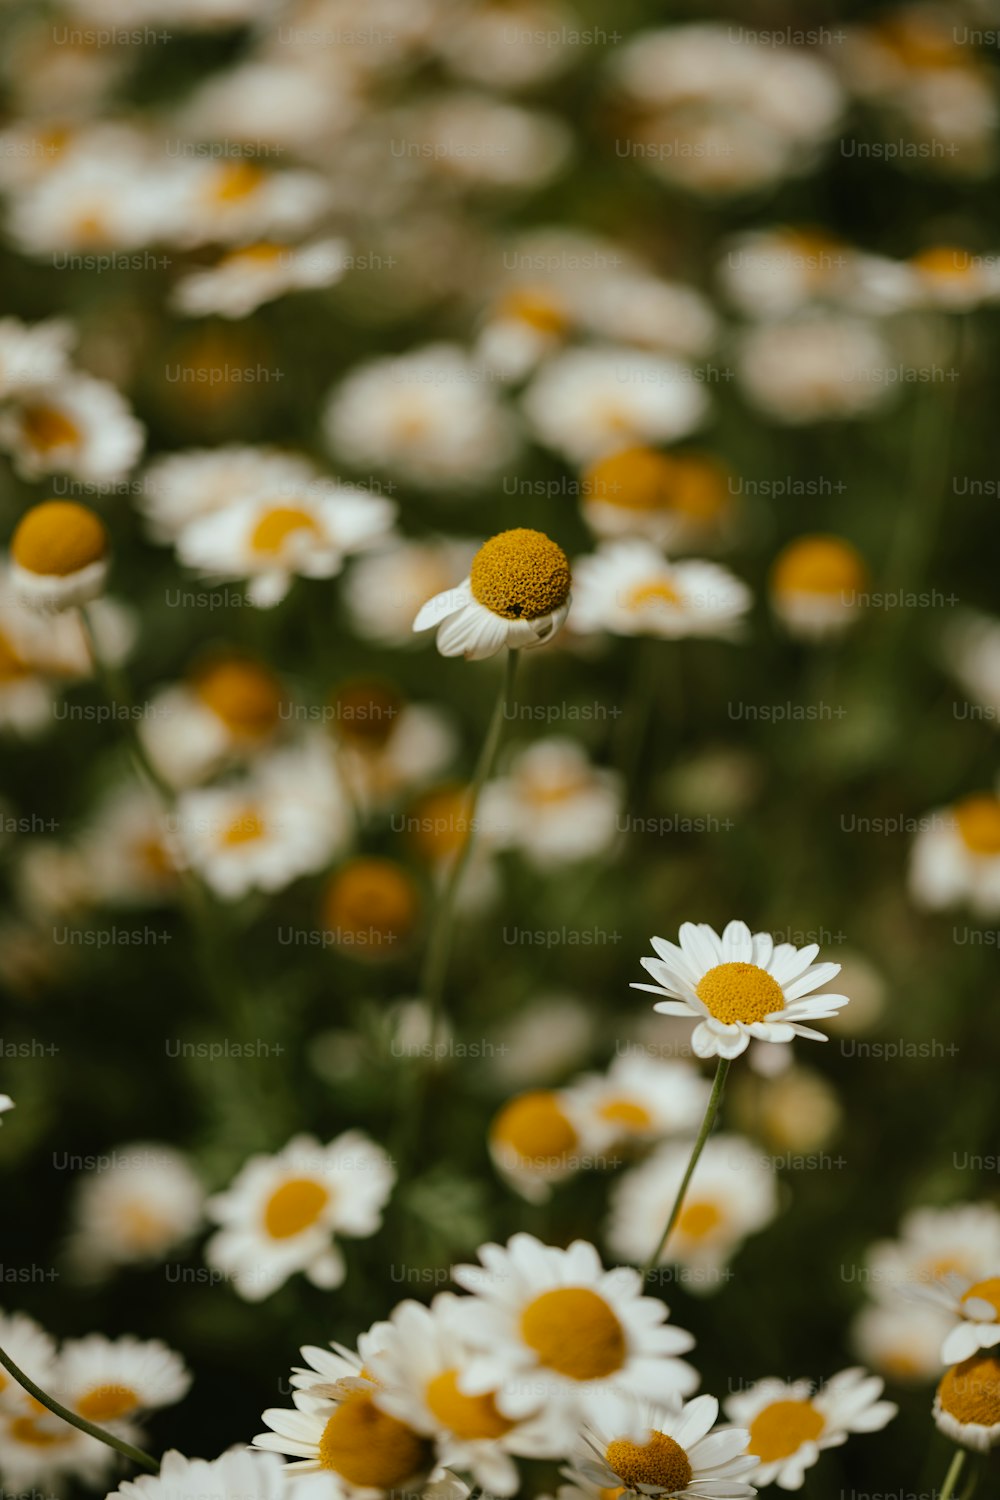 Un champ plein de fleurs blanches et jaunes